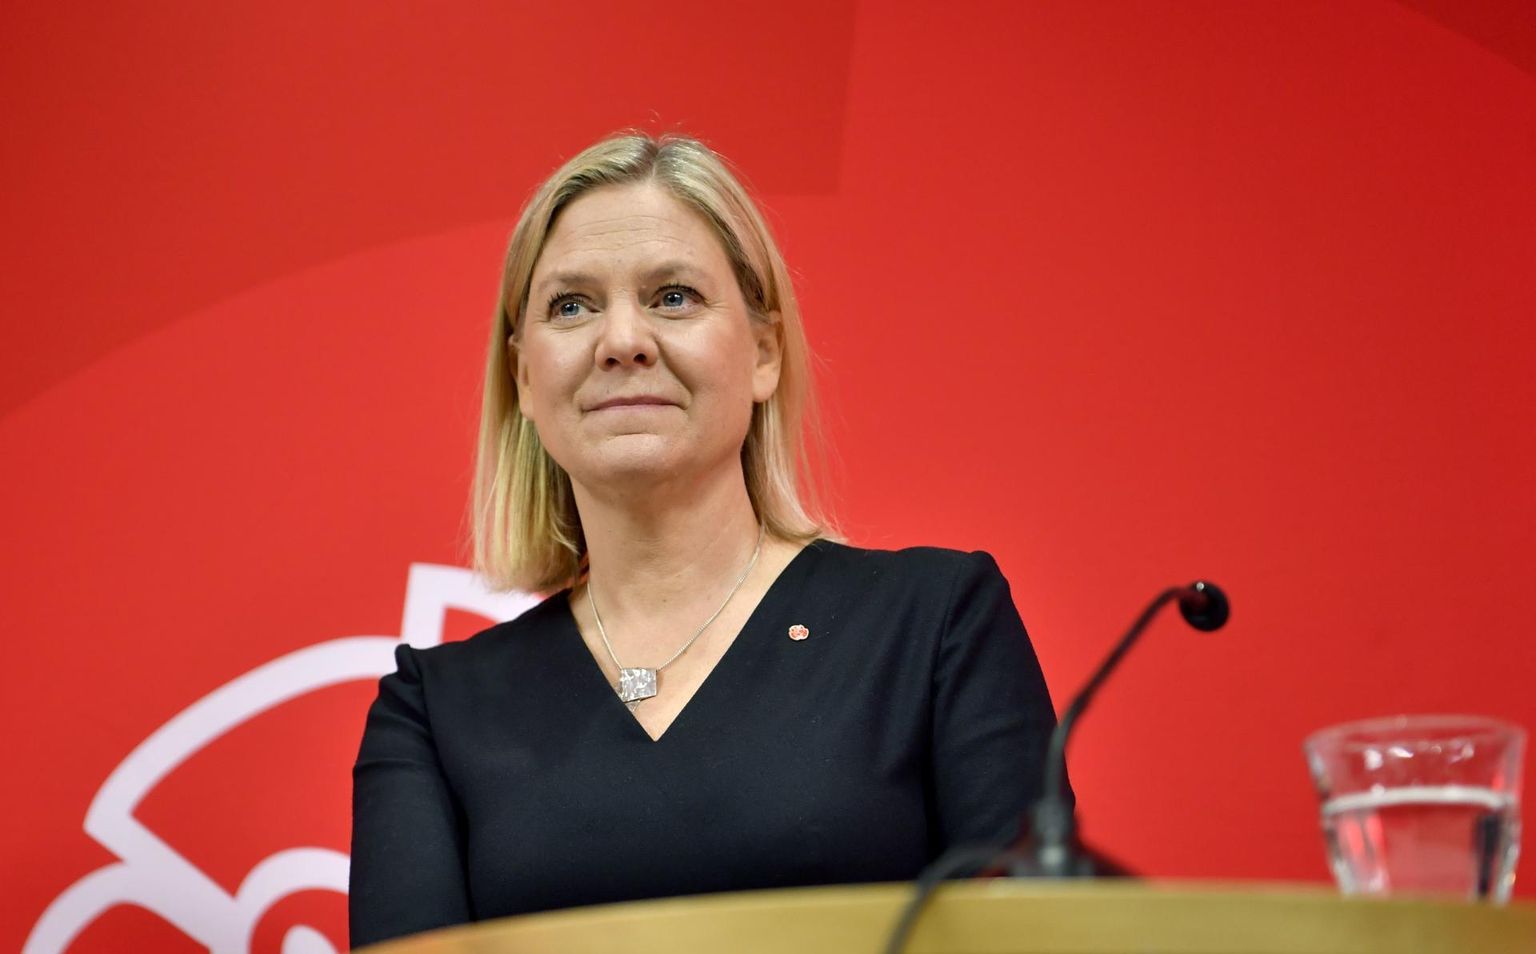 Sisuliselt otsustati Magdalena Anderssoni saamine sotside uueks juhiks septembri lõpus, kui erakonna nimetamiskomisjon seadis ta ainsa esimehekandidaadina üles täna toimuvaks hääletuseks. Pildil Andersson pressikonverentsil Stockholmis, kus otsus teatavaks tehti. 